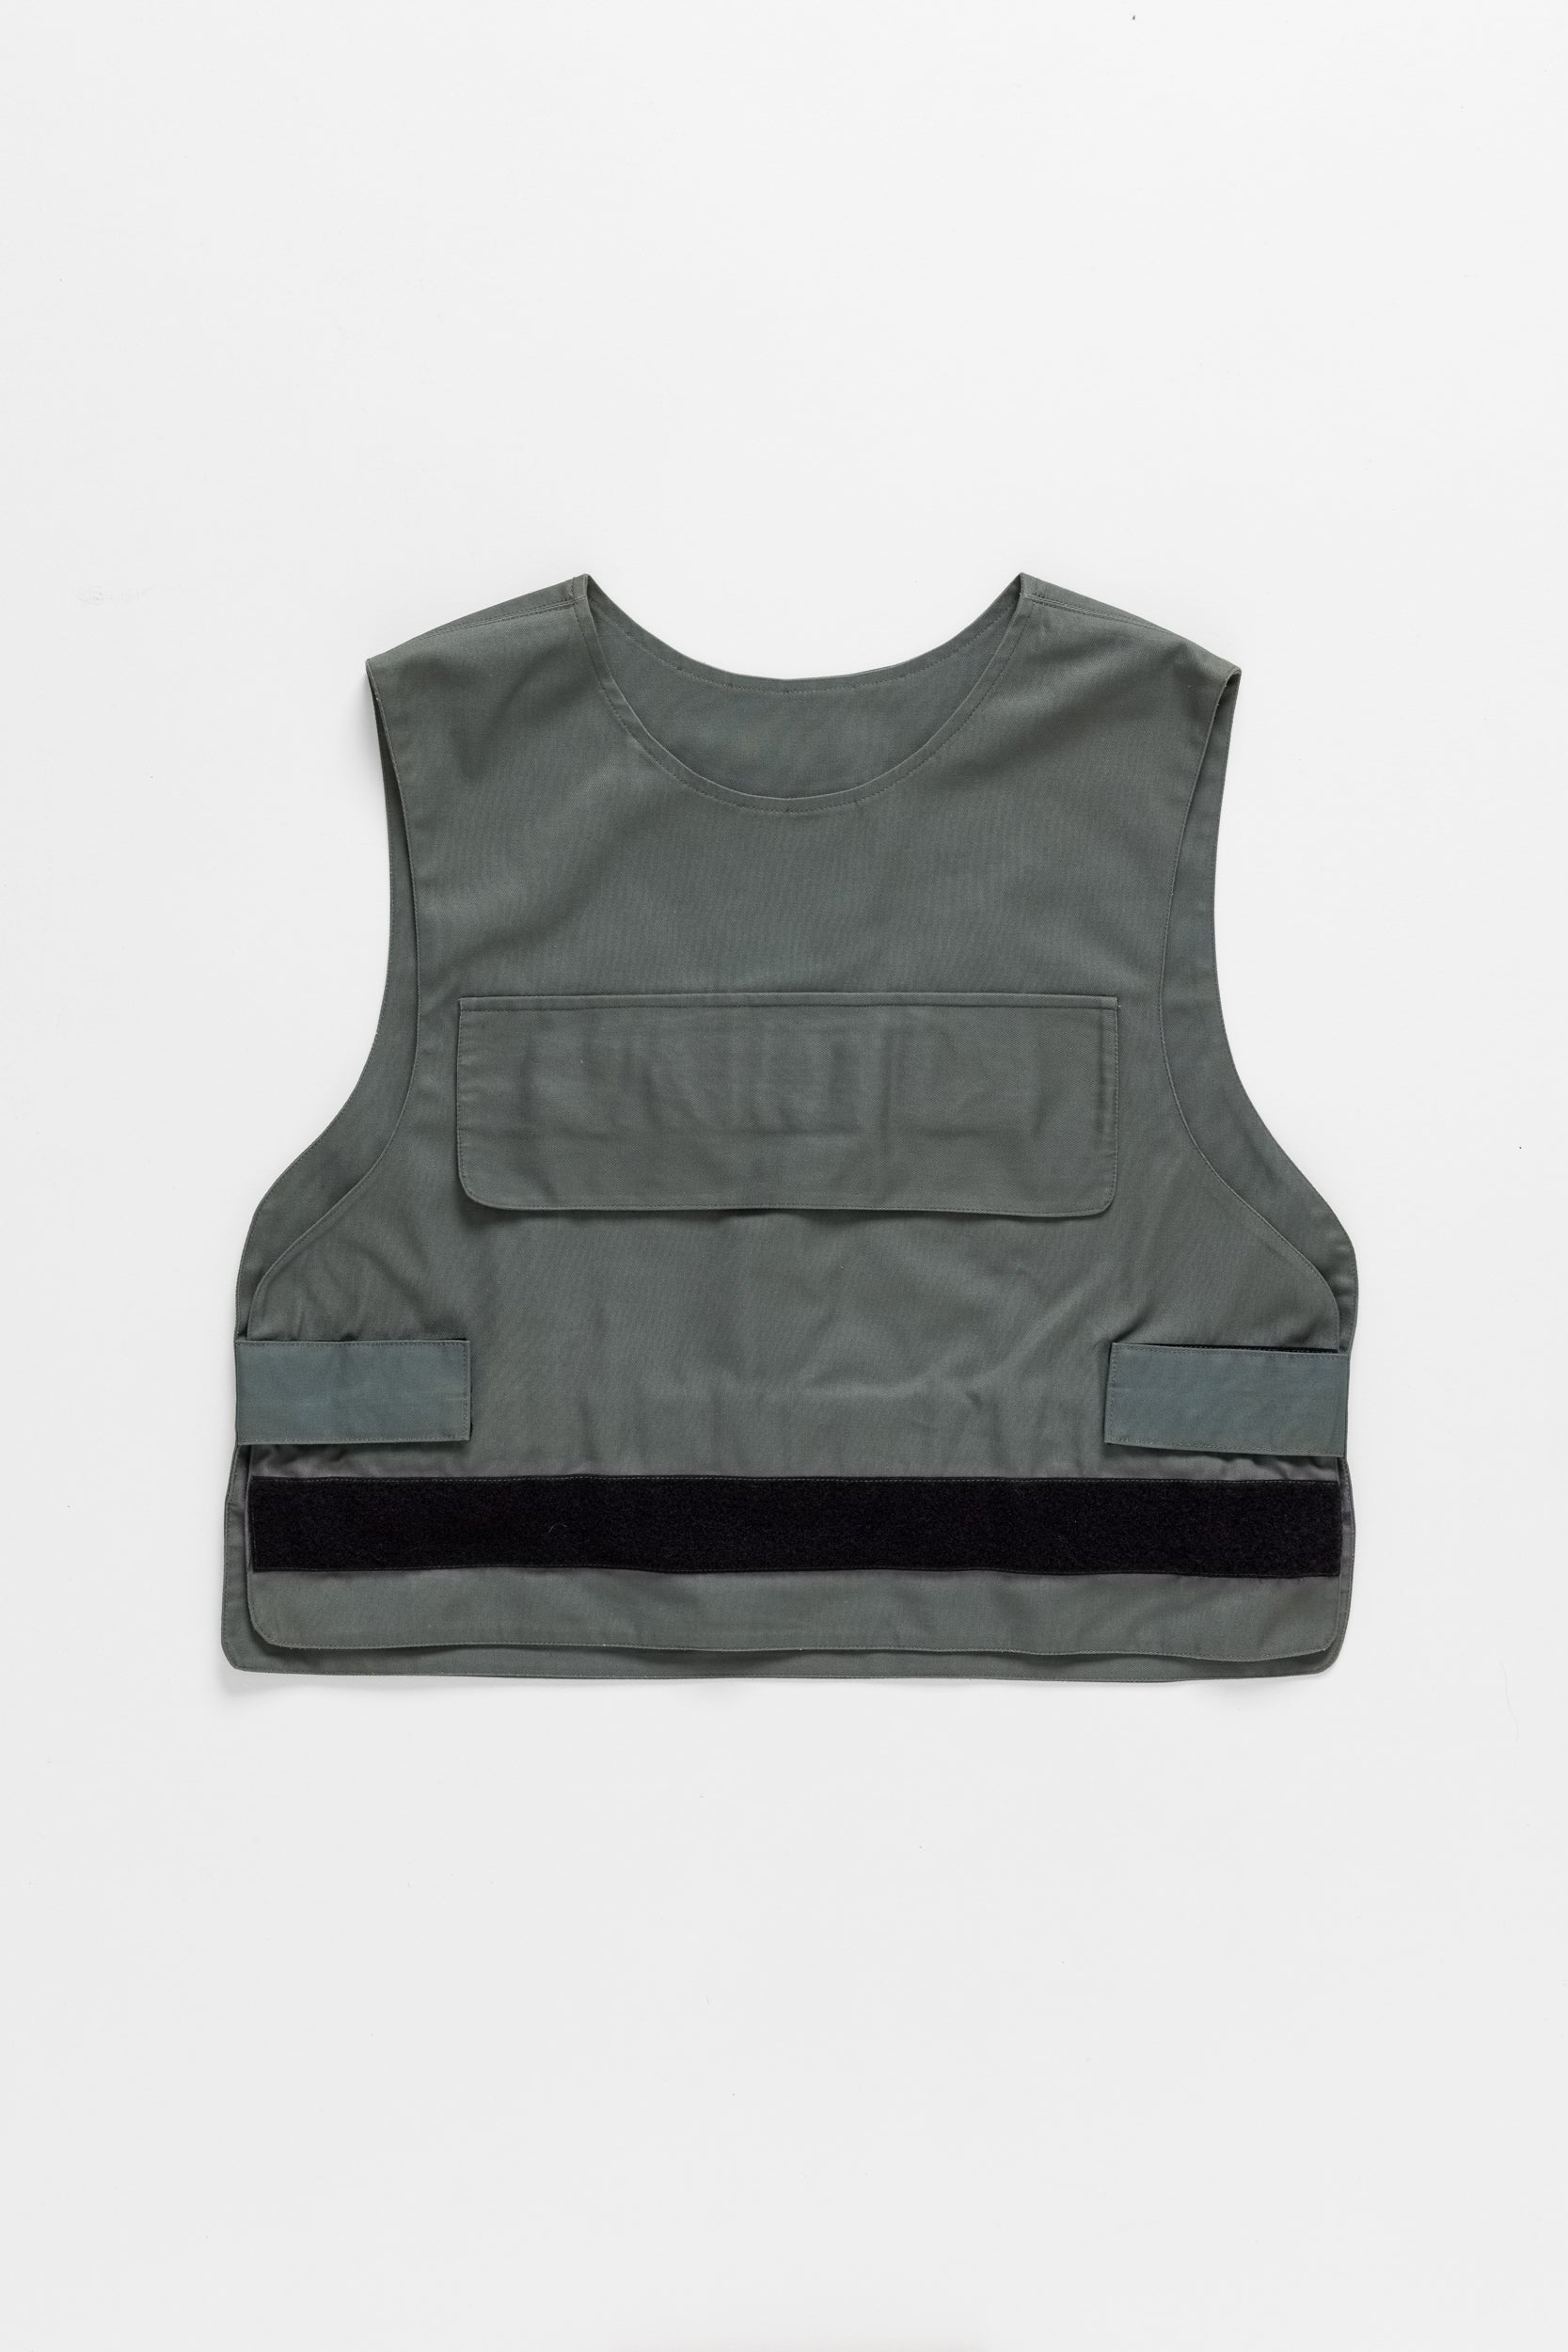 Grey army bulletproof vest